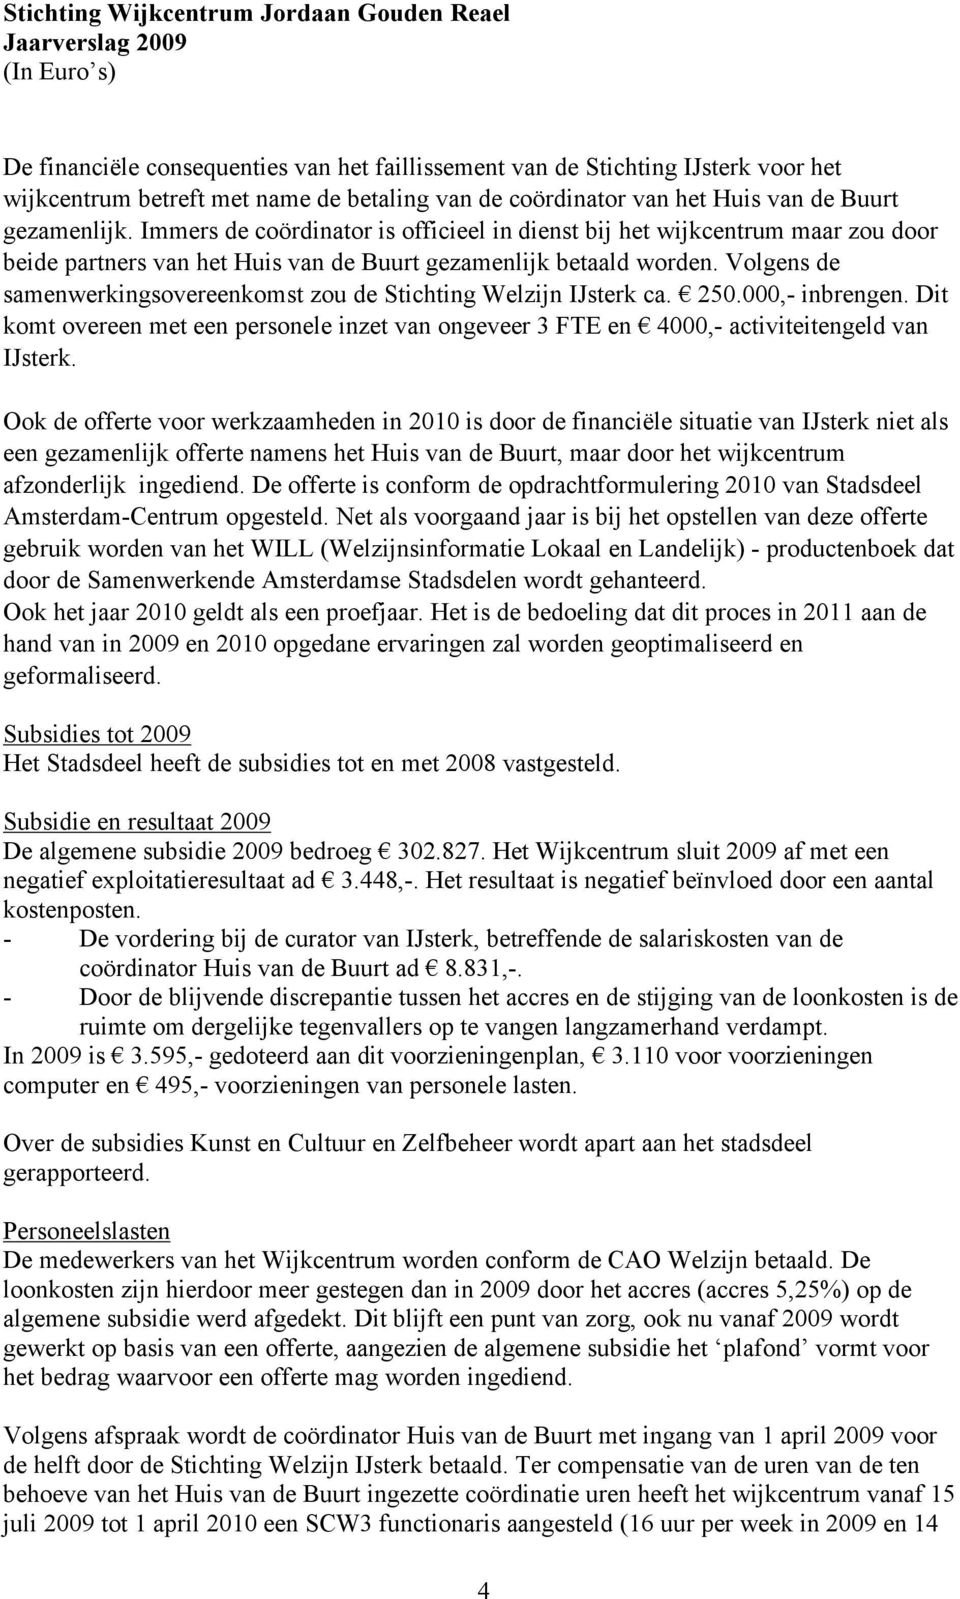 Volgens de samenwerkingsovereenkomst zou de Stichting Welzijn IJsterk ca. 250.000,- inbrengen. Dit komt overeen met een personele inzet van ongeveer 3 FTE en 4000,- activiteitengeld van IJsterk.